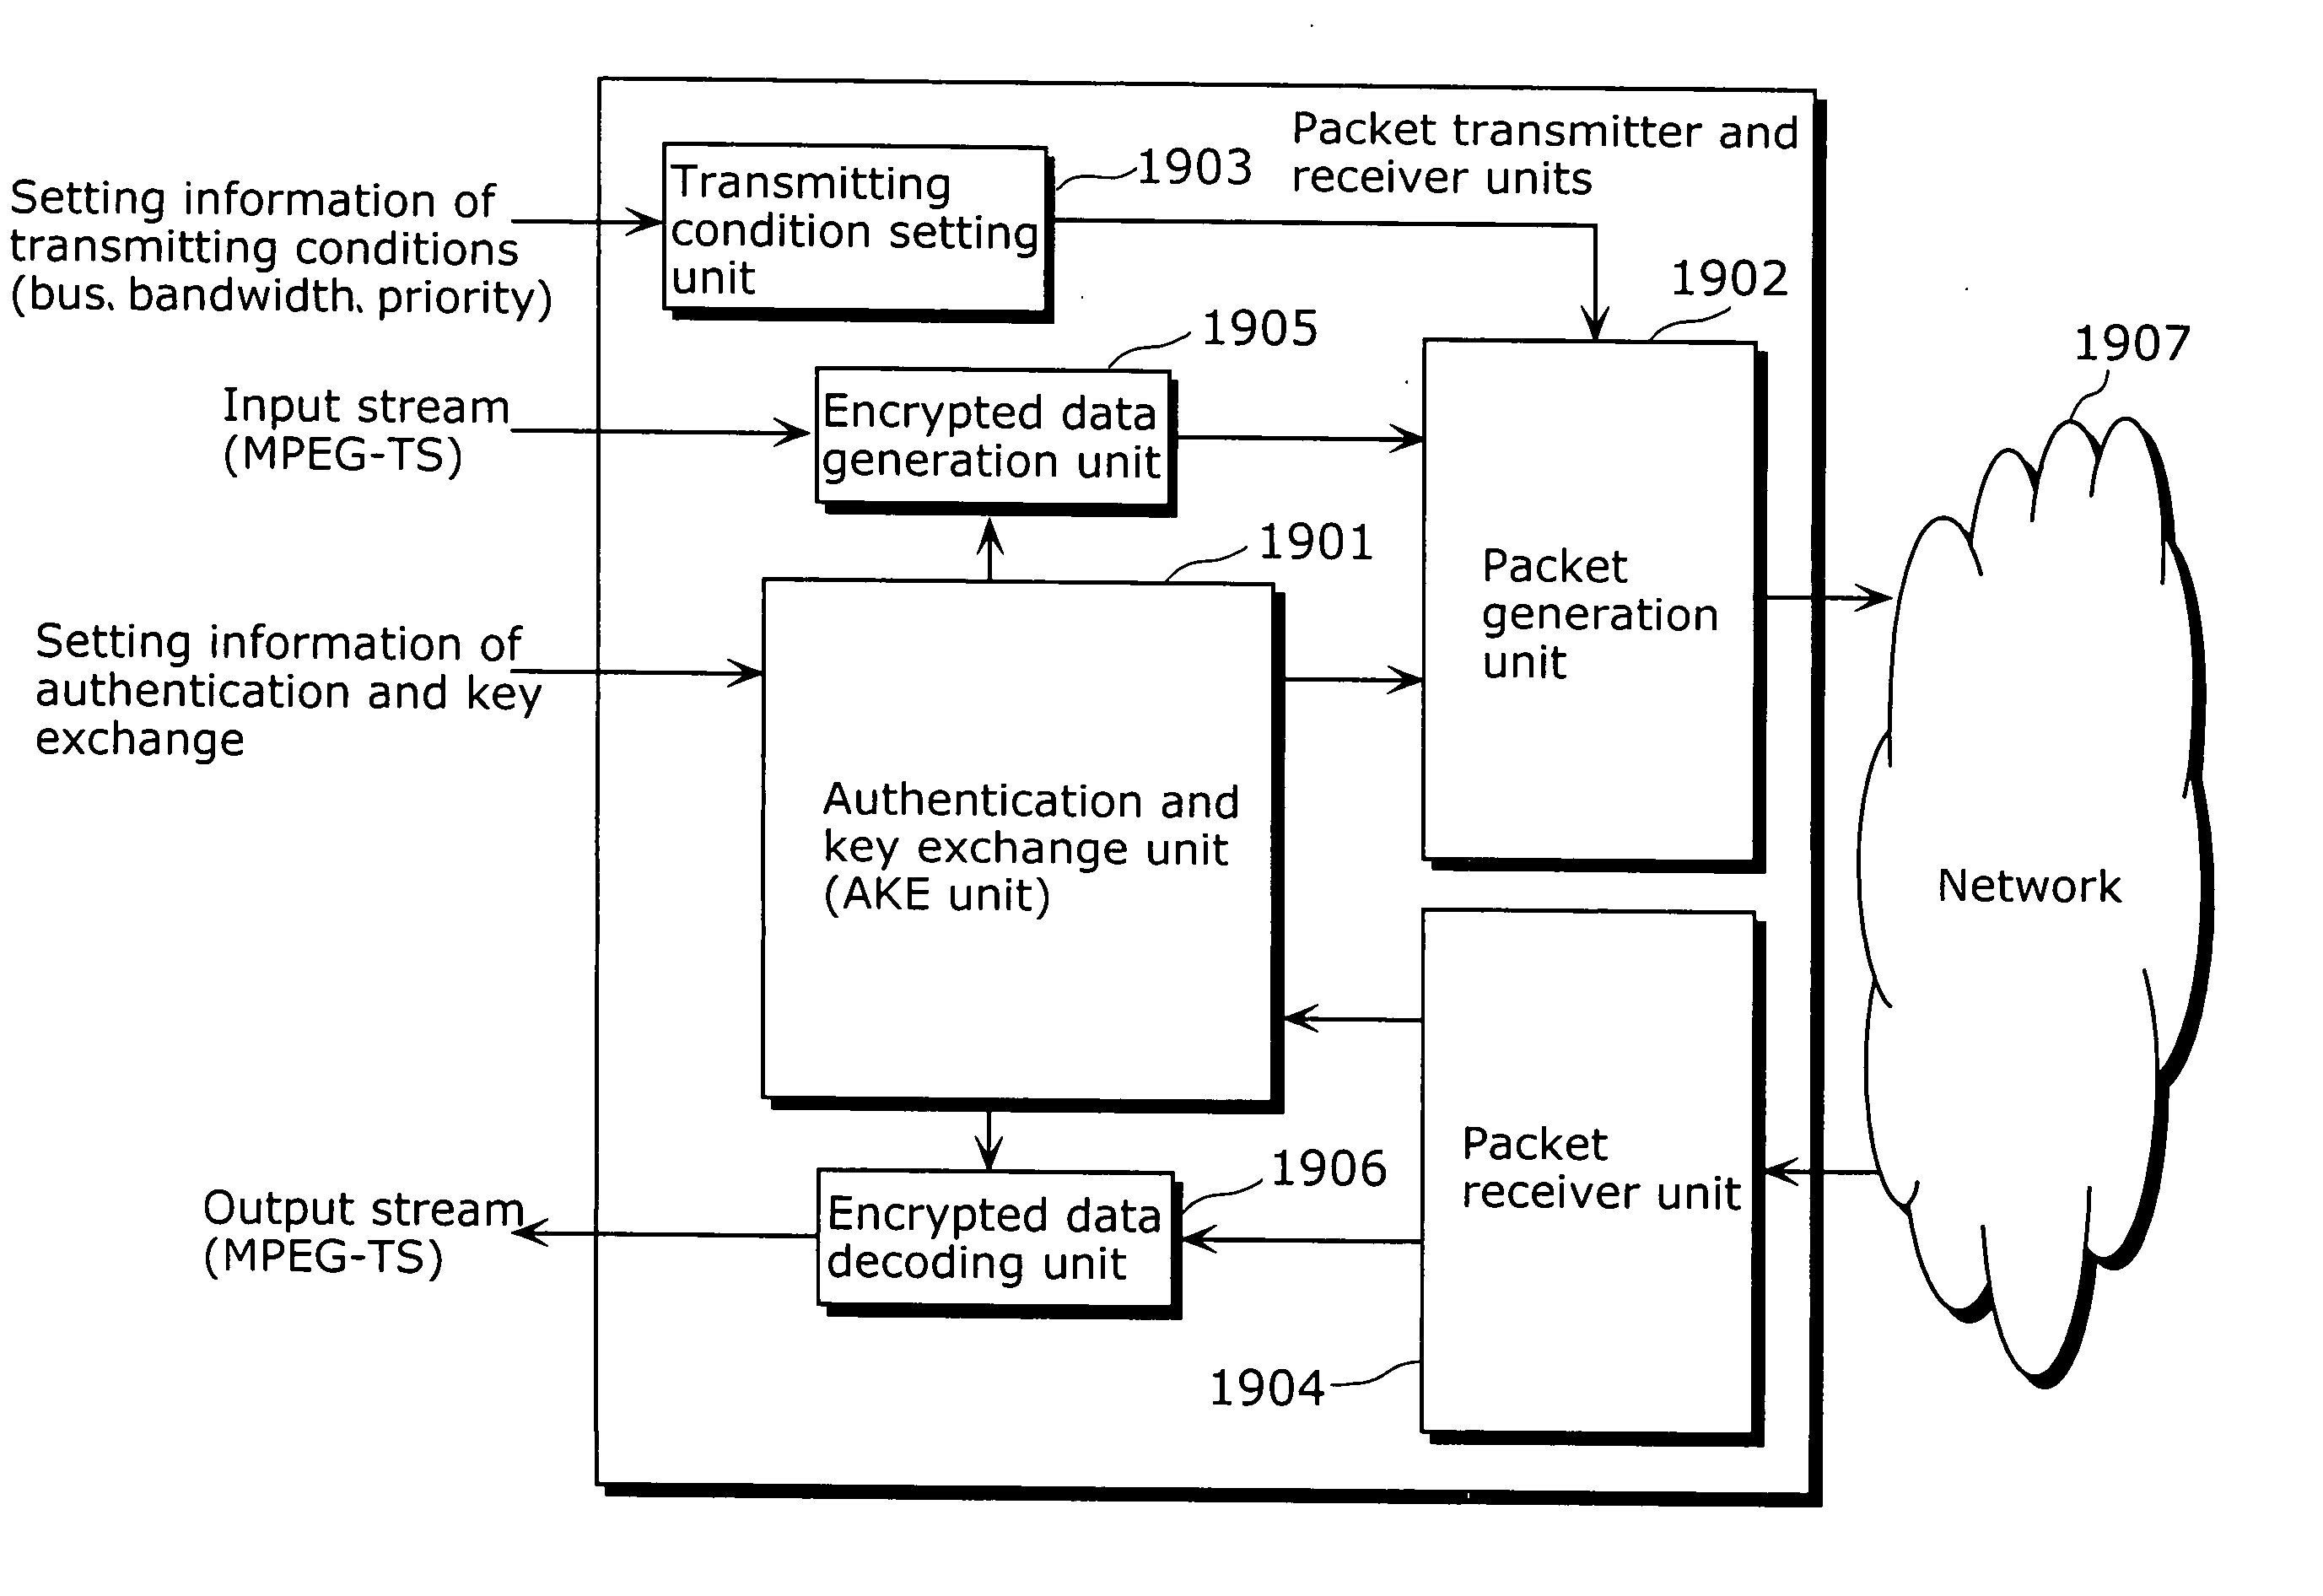 Packet transmitter apparatus